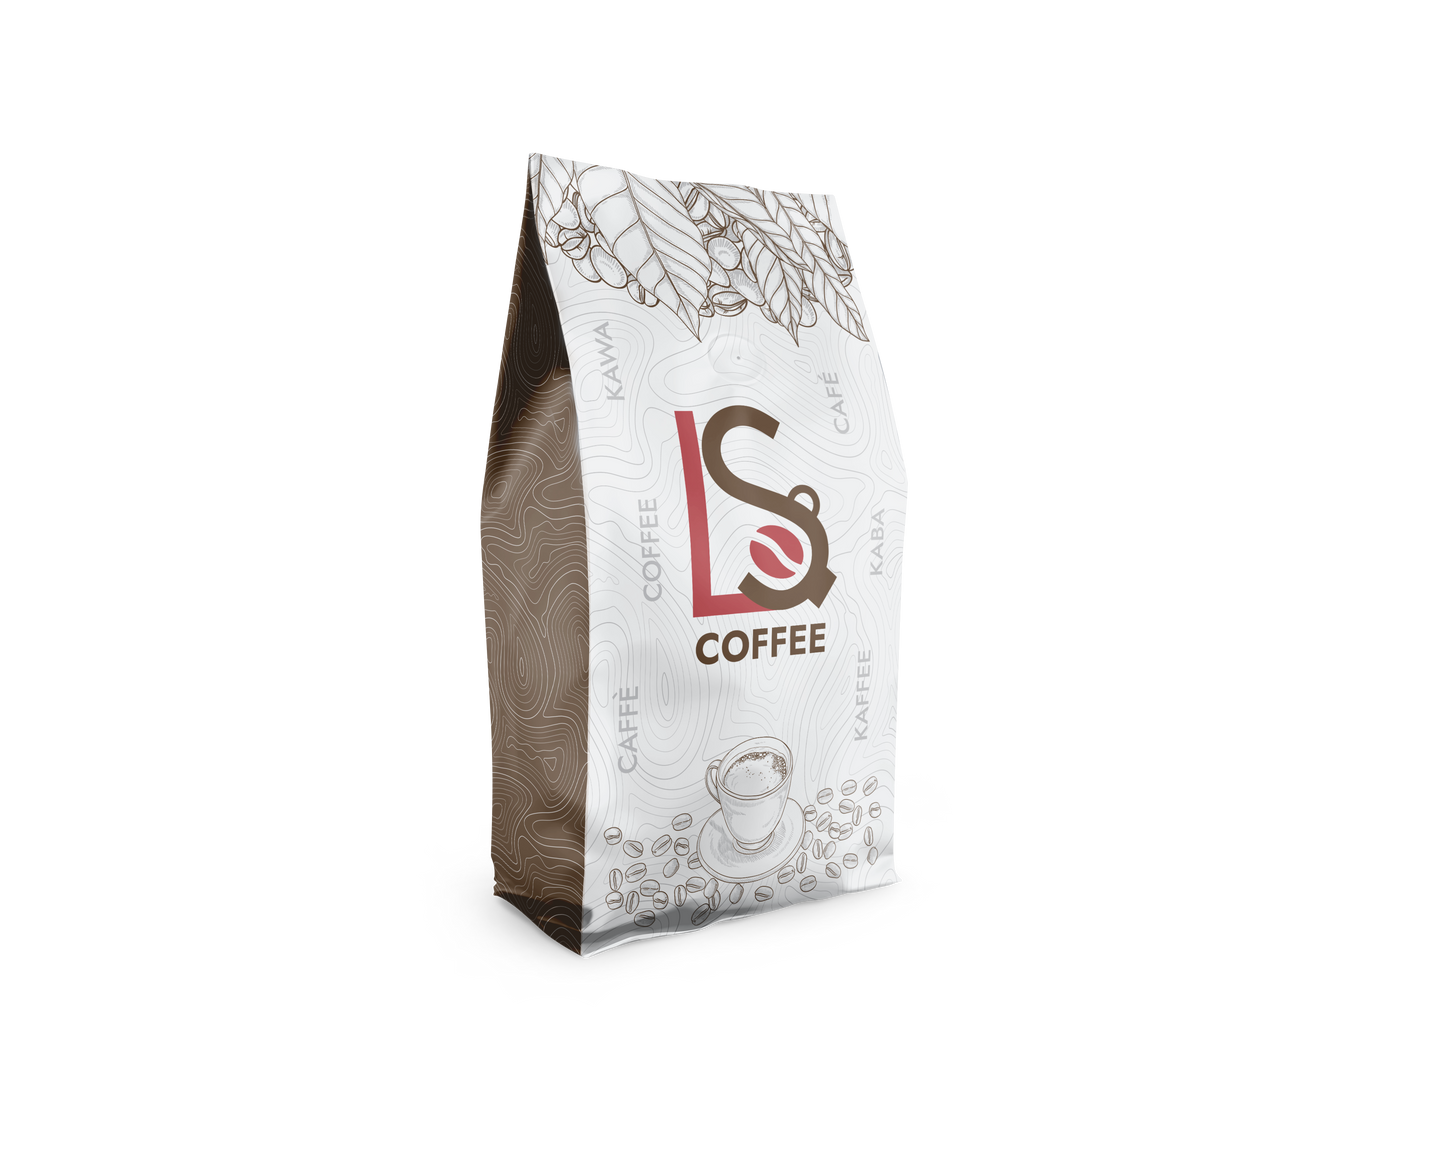 Kawa ziarnista LS COFFEE 50/50, 1 kg